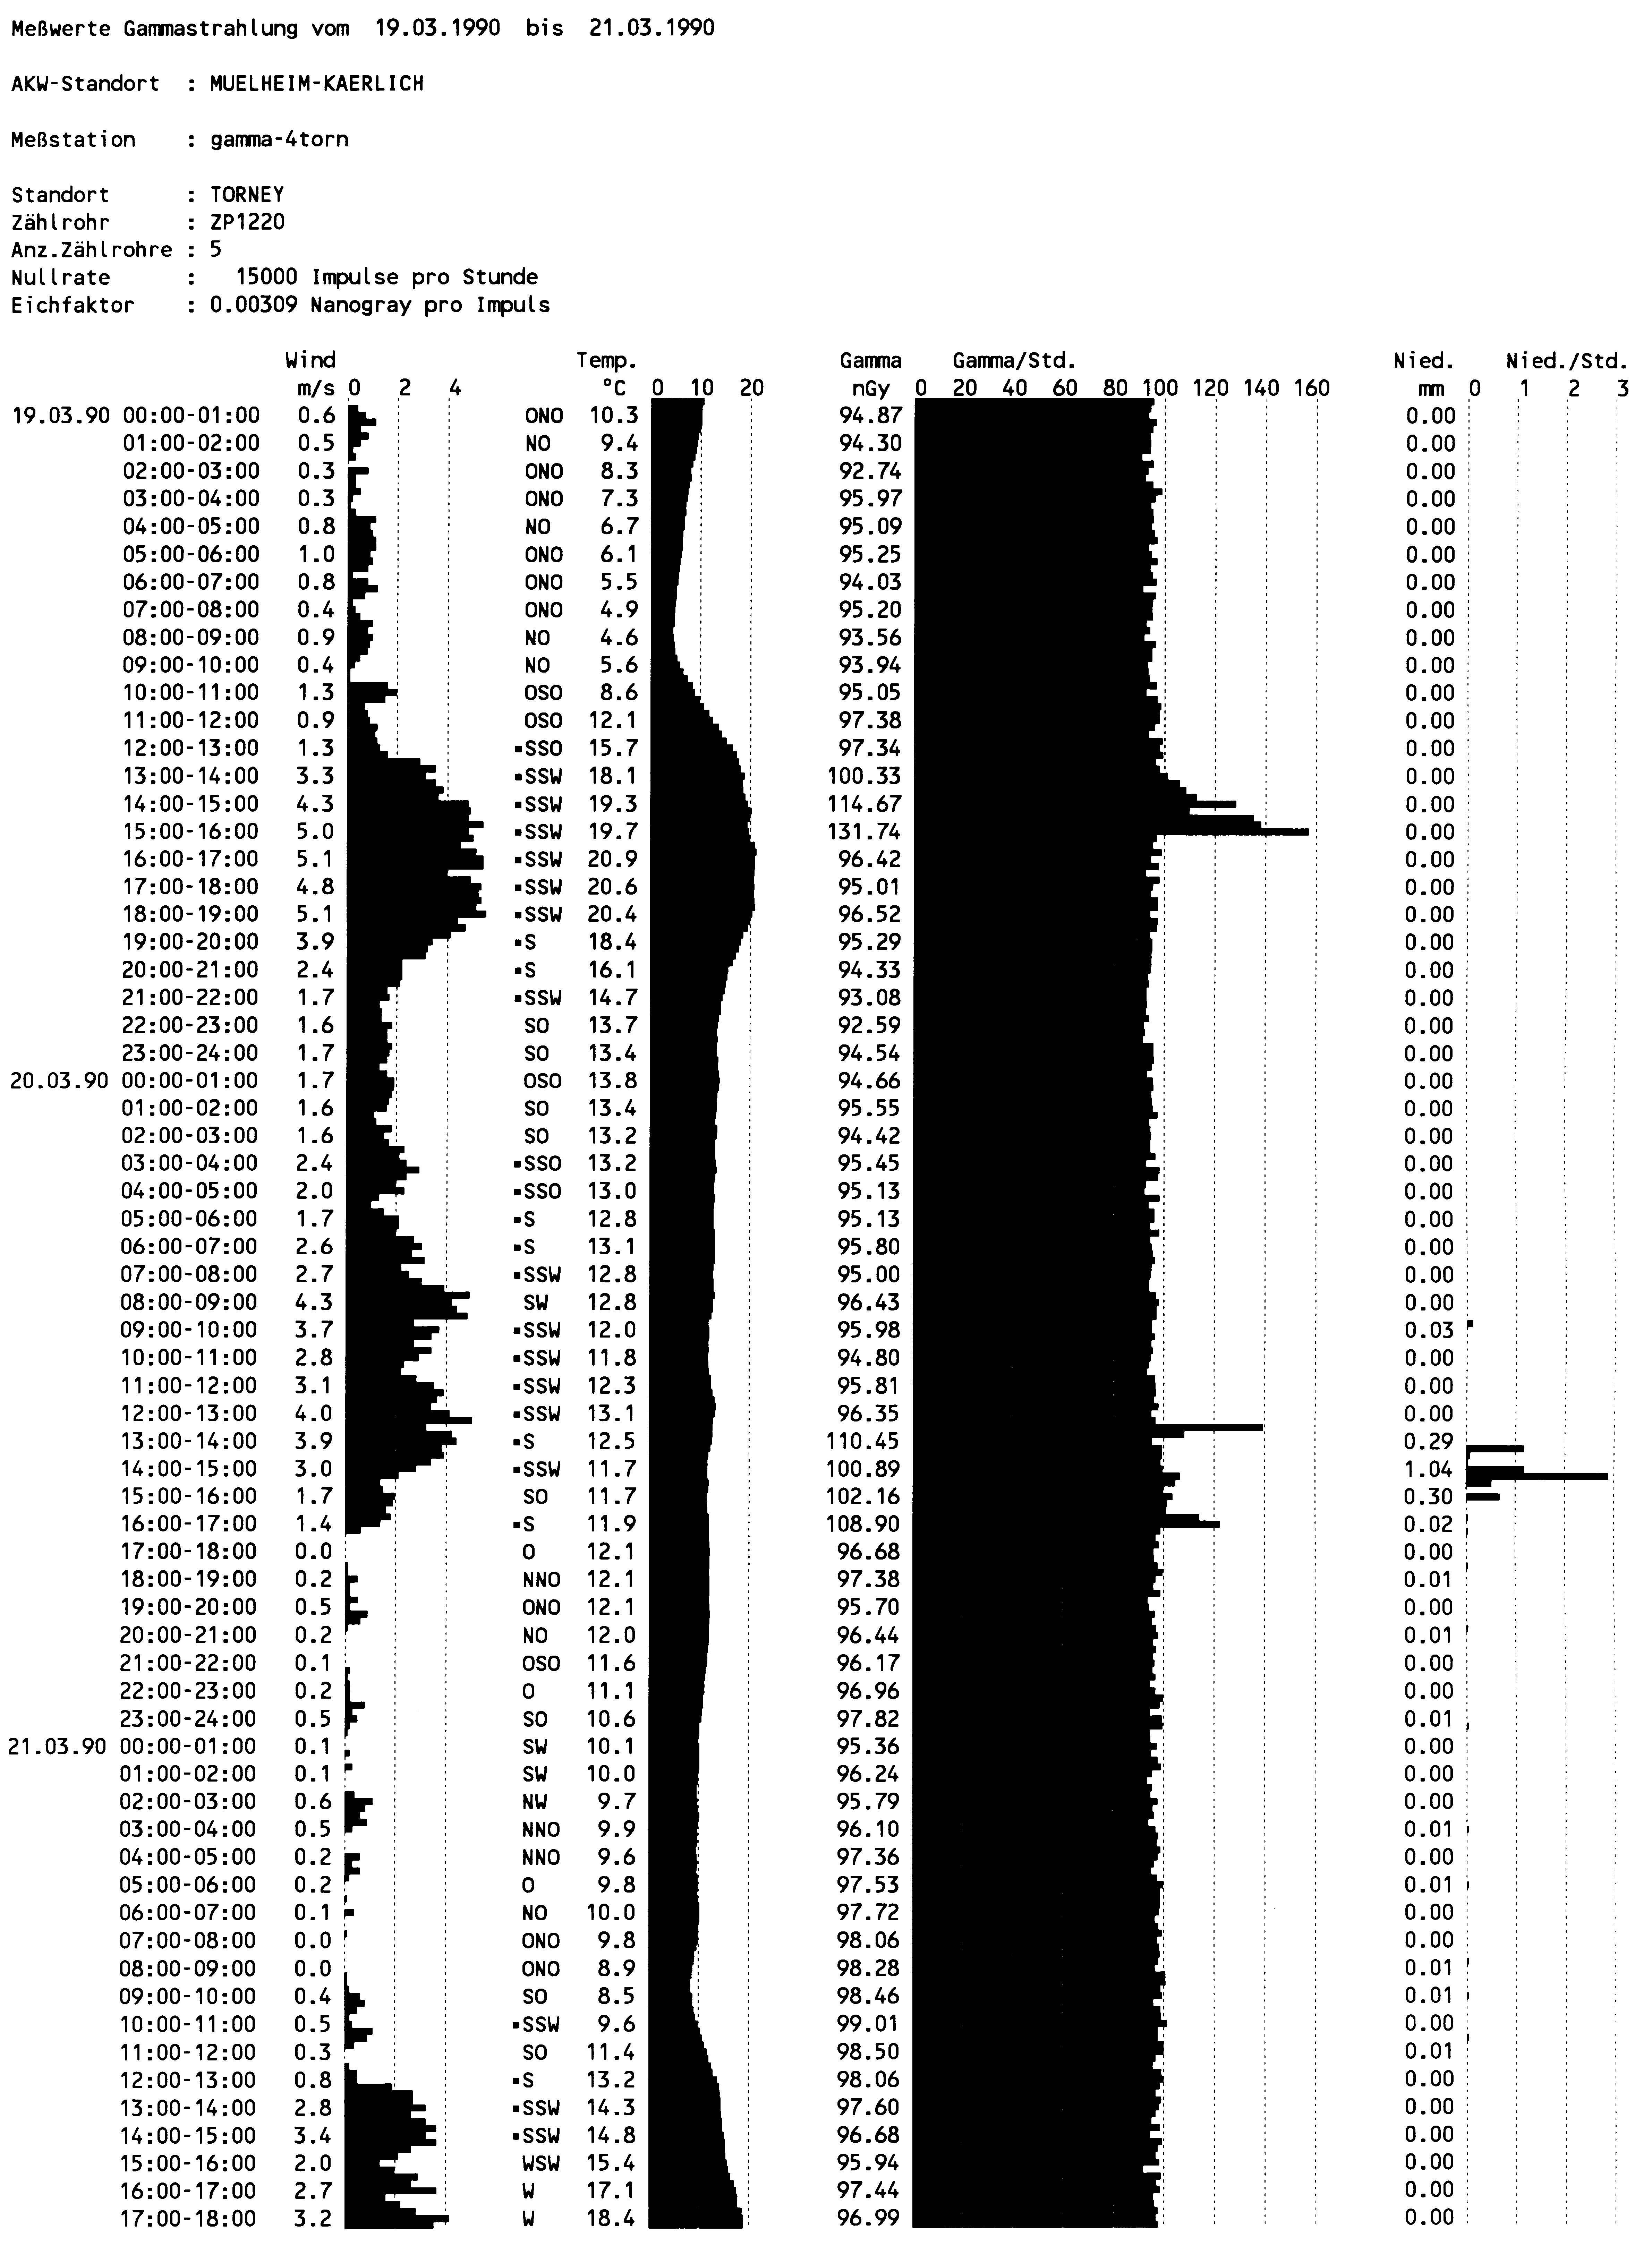 Beispiel einer ausgedruckten Zeitreihendarstellung über 13 Tage ab dem 09.12.1991 an der Messstation Torney der ARGUS e.V.